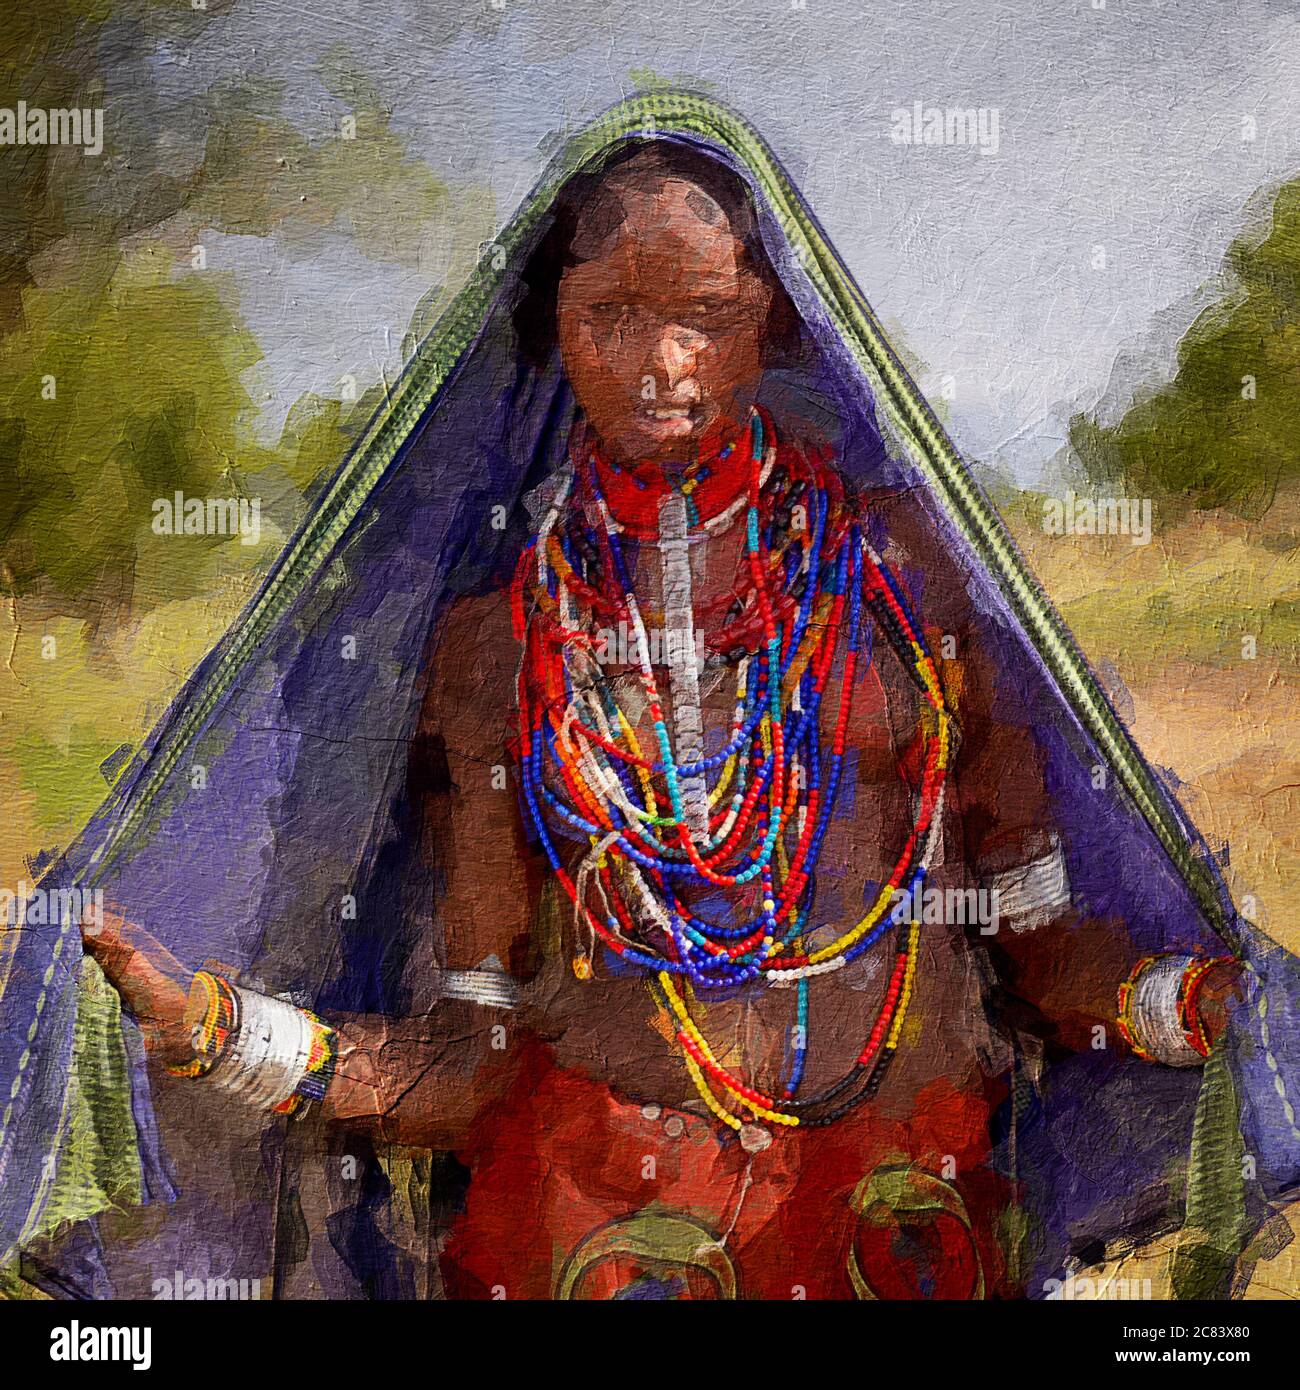 Illustration de peinture d'une femme de tribu africaine avec des ornements traditionnels Banque D'Images